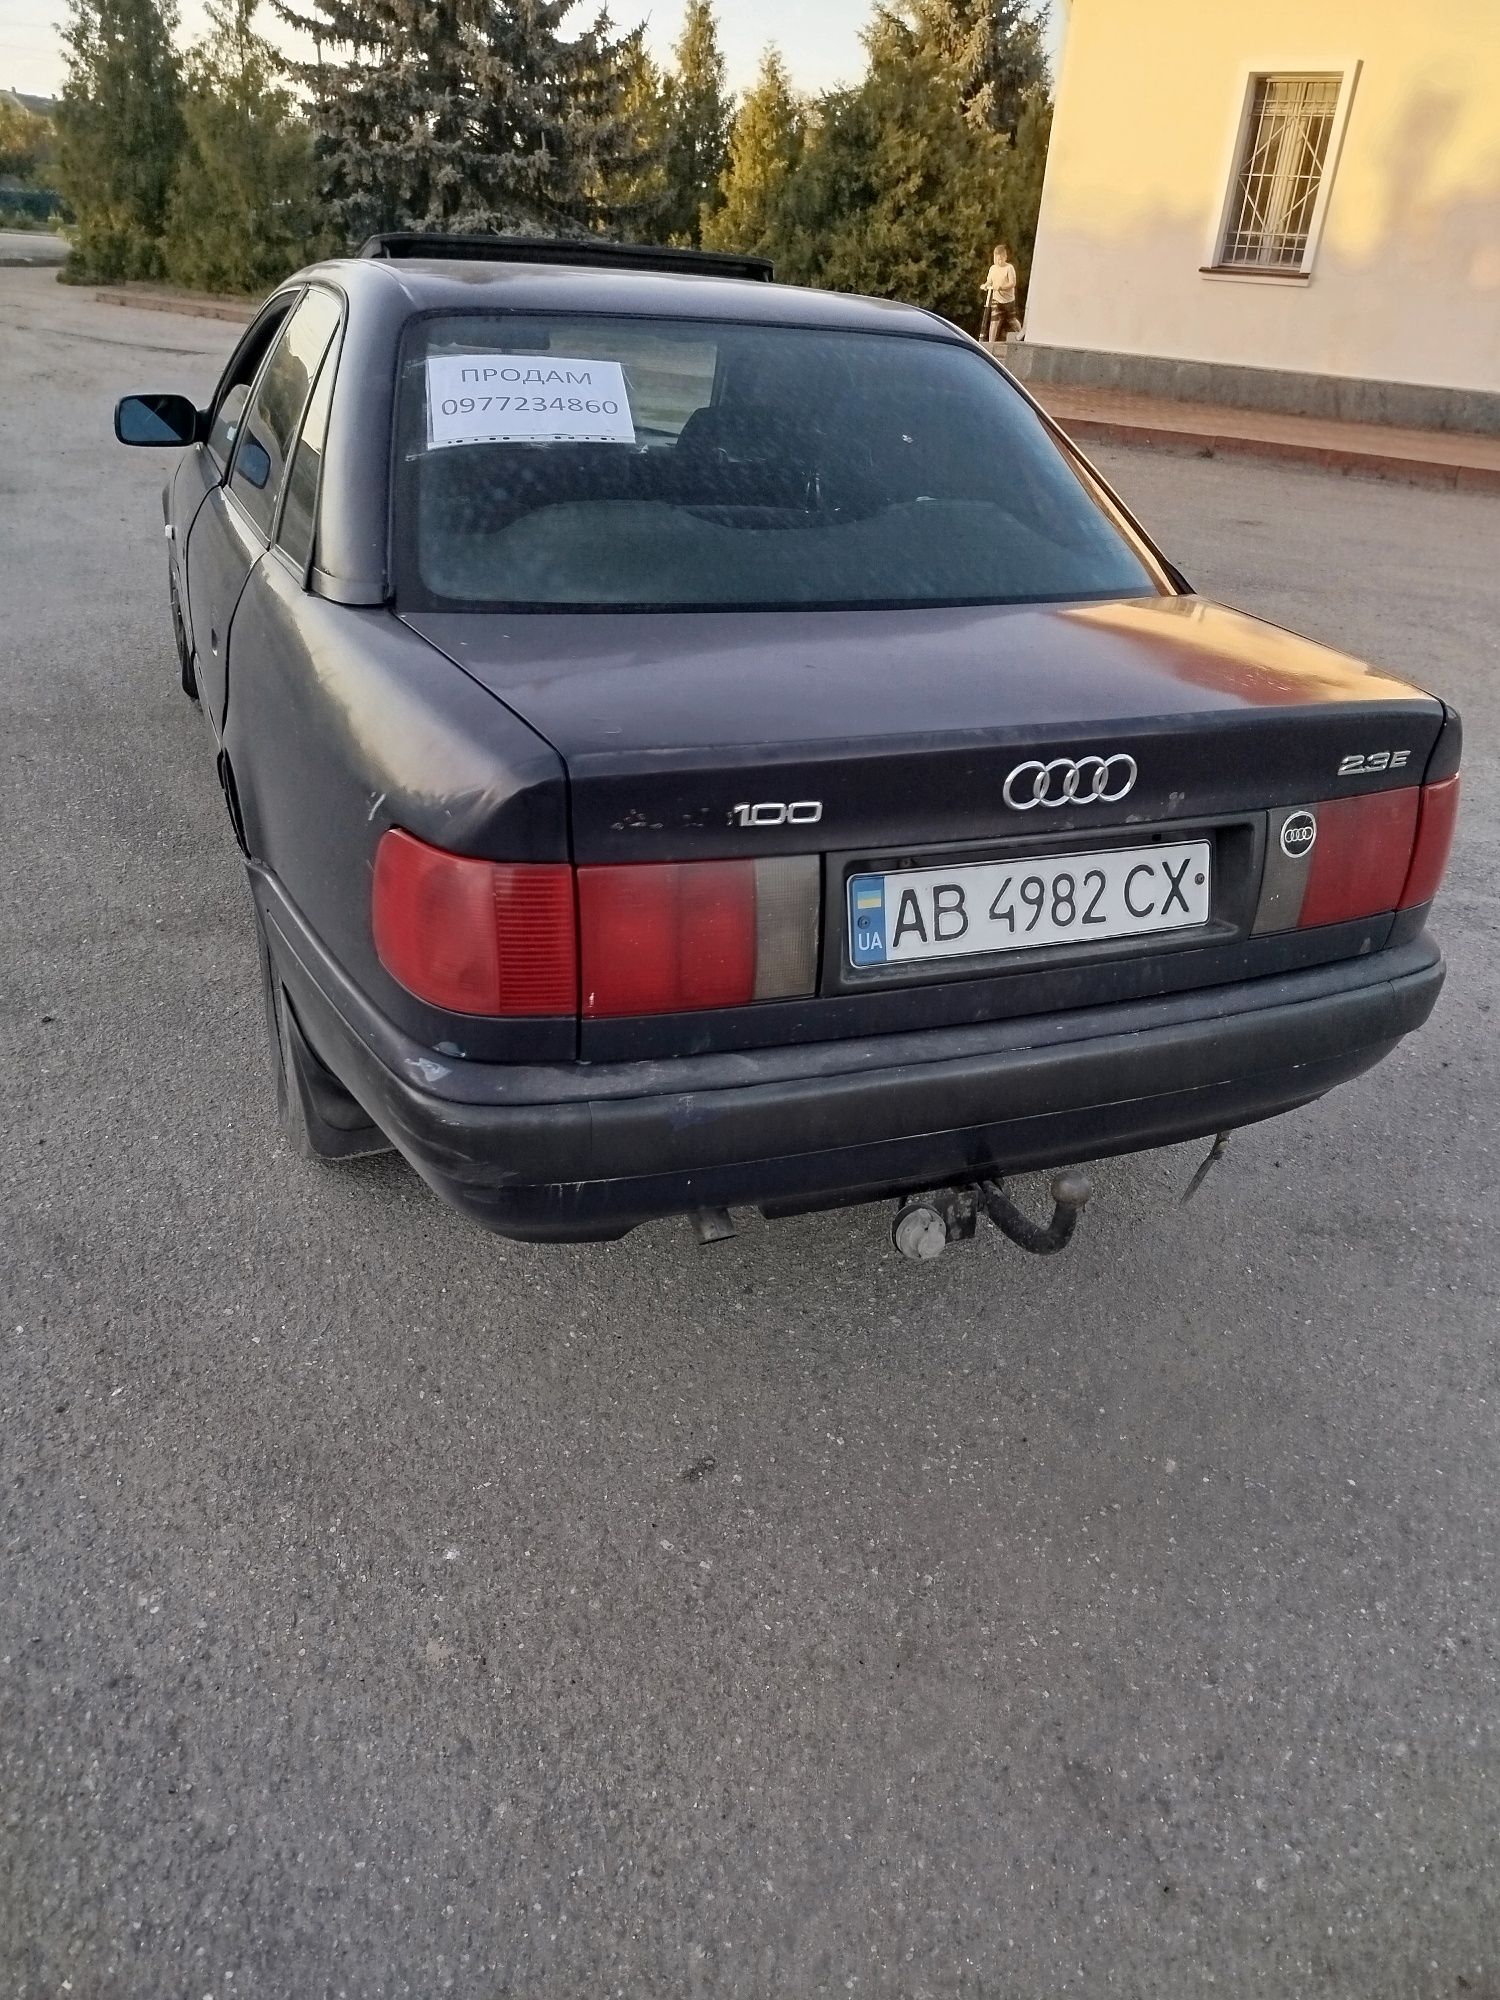 Продам Audi 100 с4